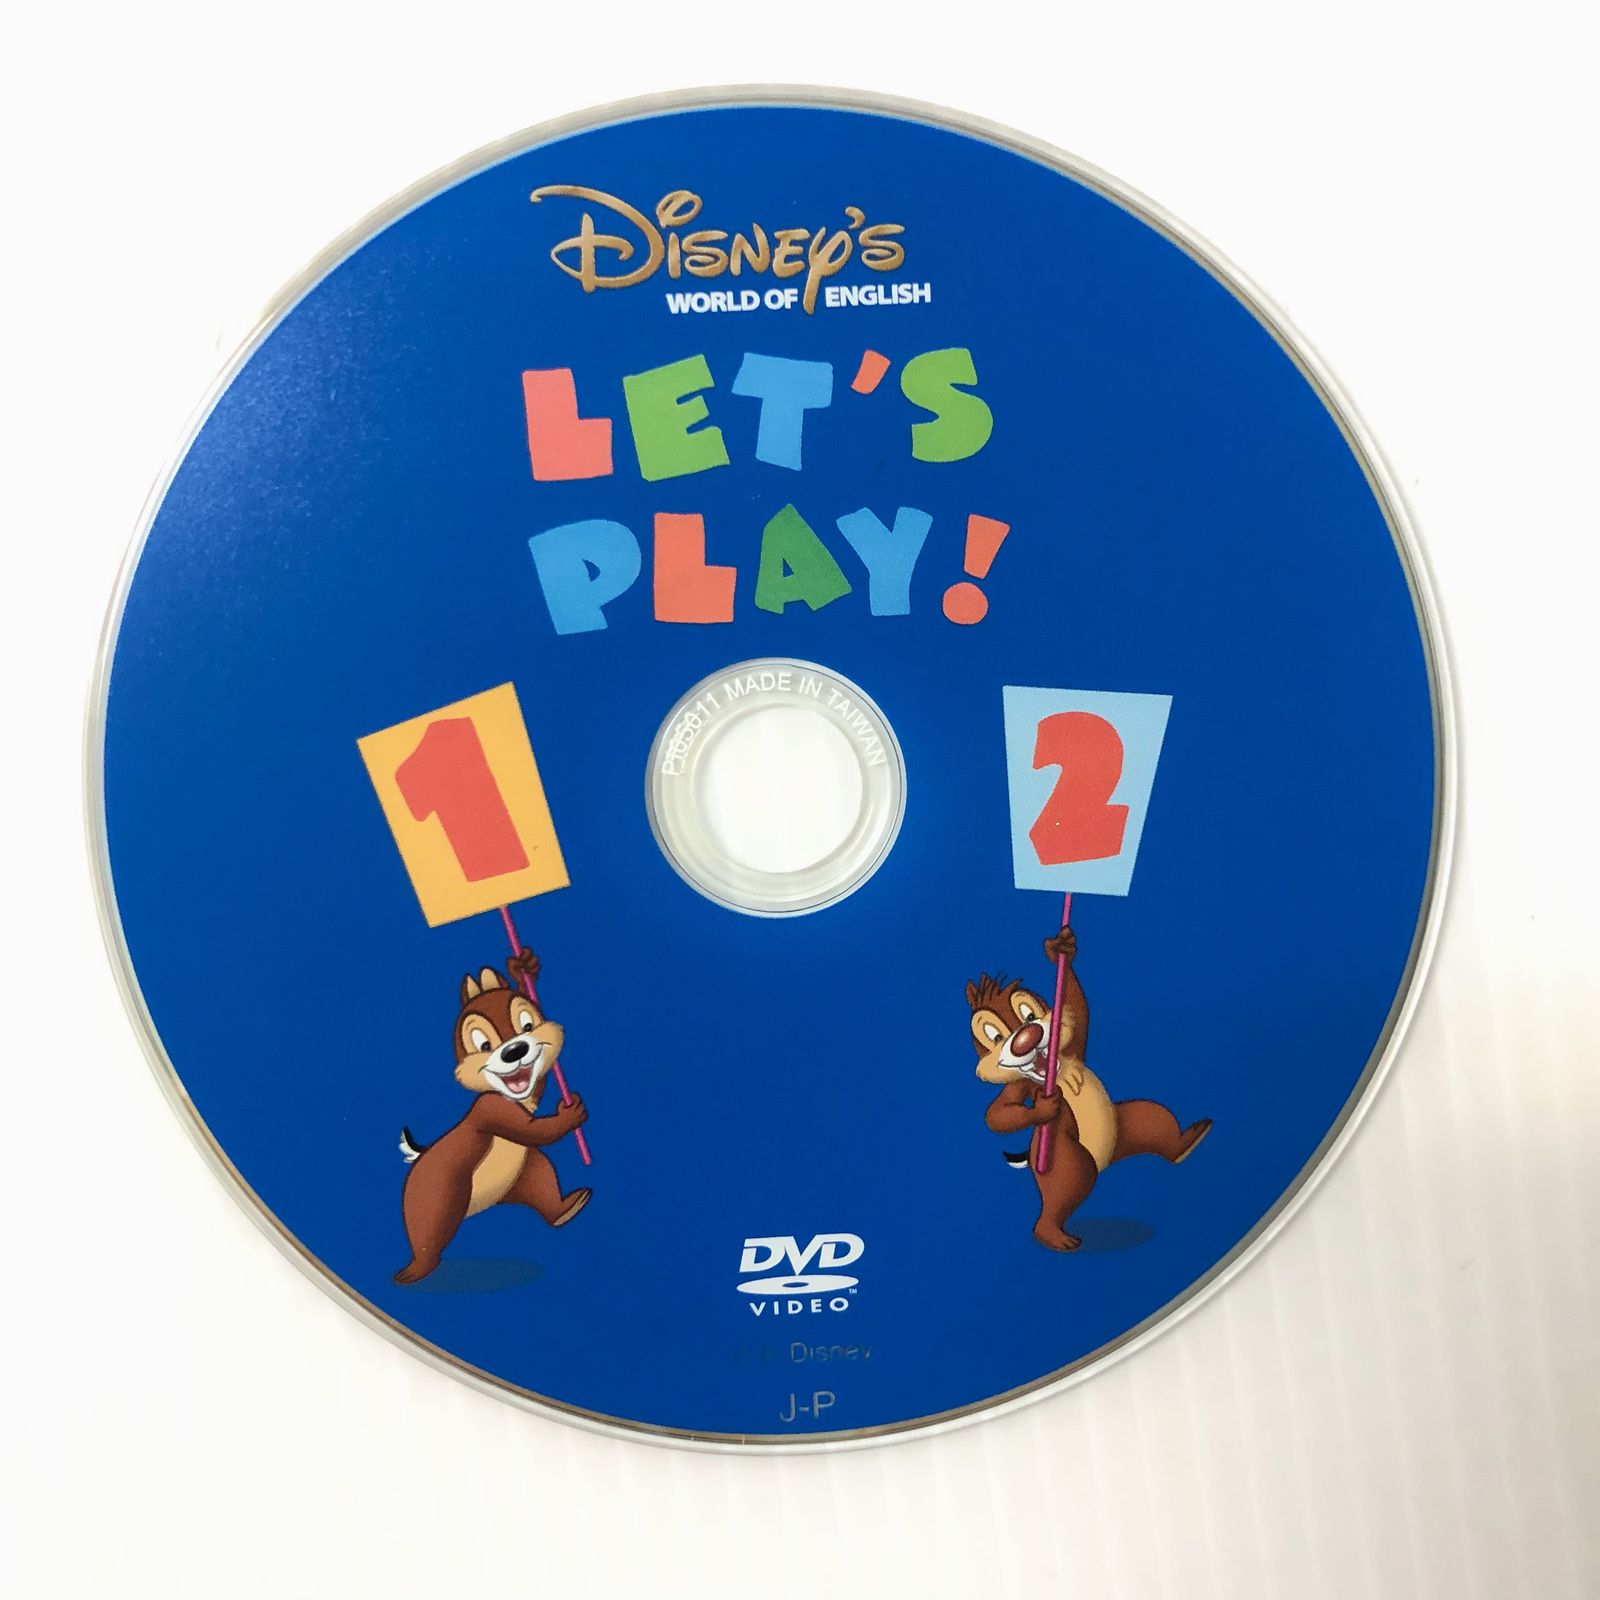 ディズニー英語システム レッツプレイ DVD プレビュー機能有 2015年 未開封多数 l-239 DWE ワールドファミリー 幼児教材